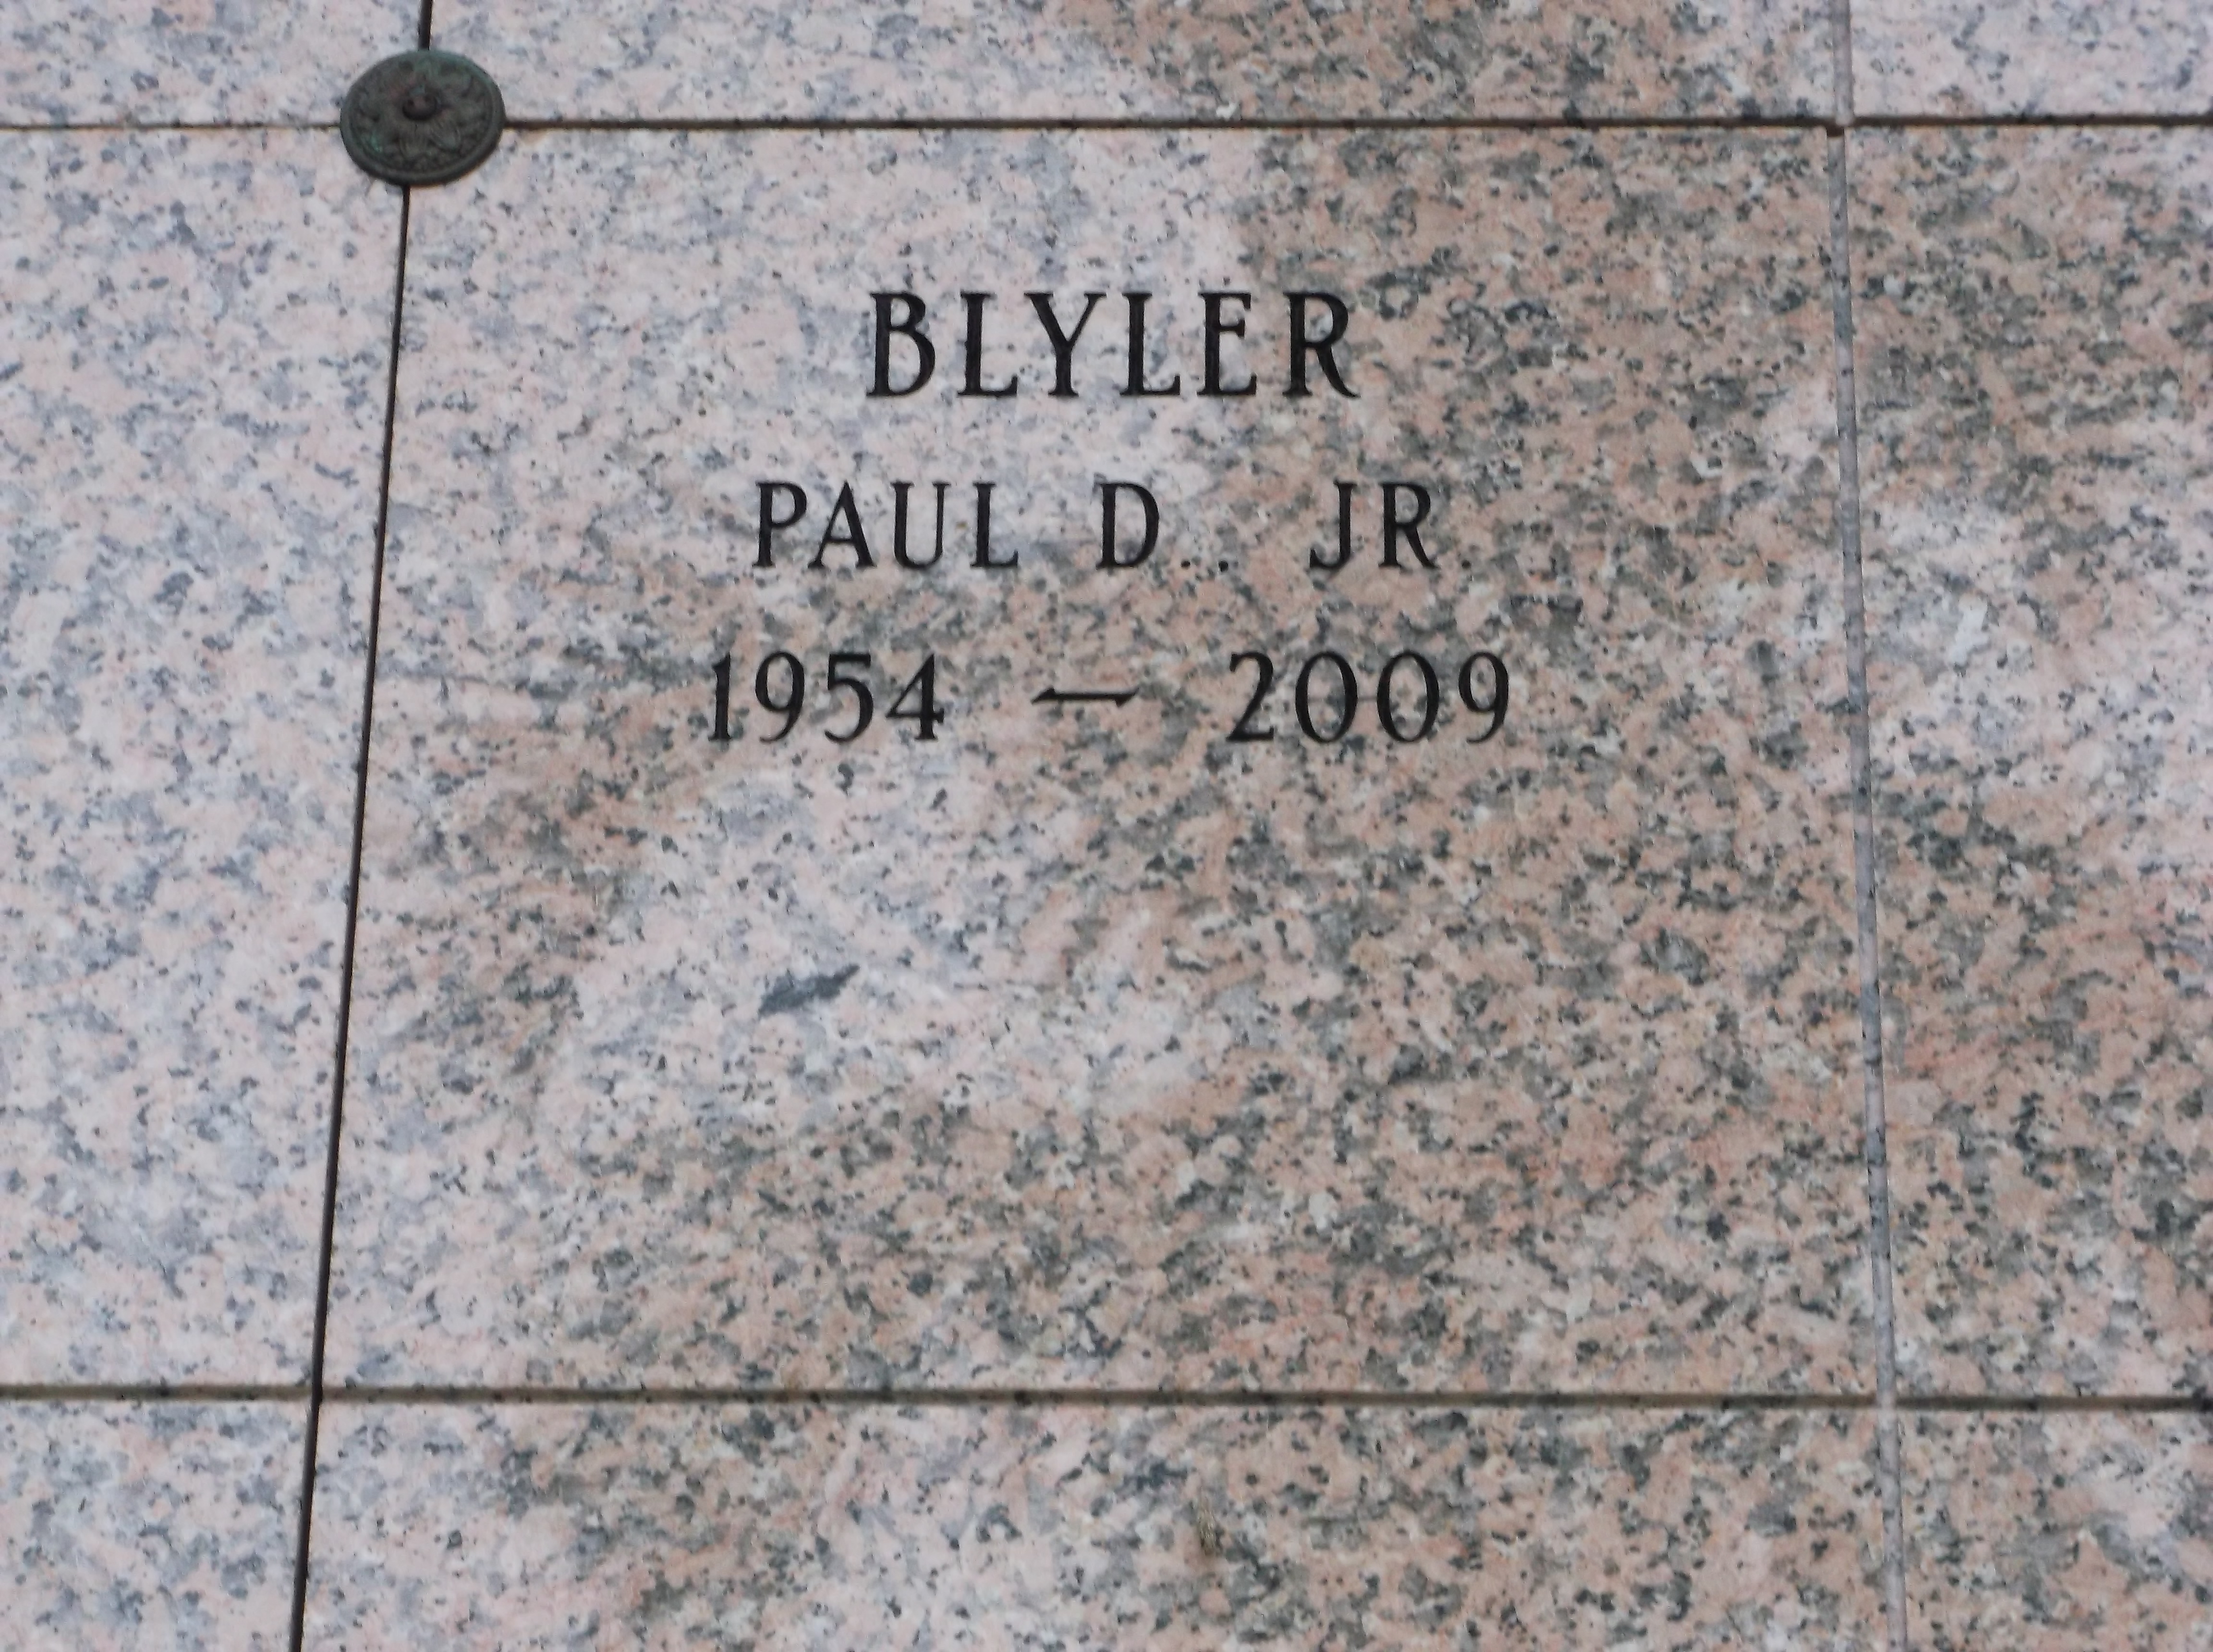 Paul D Blyler, Jr